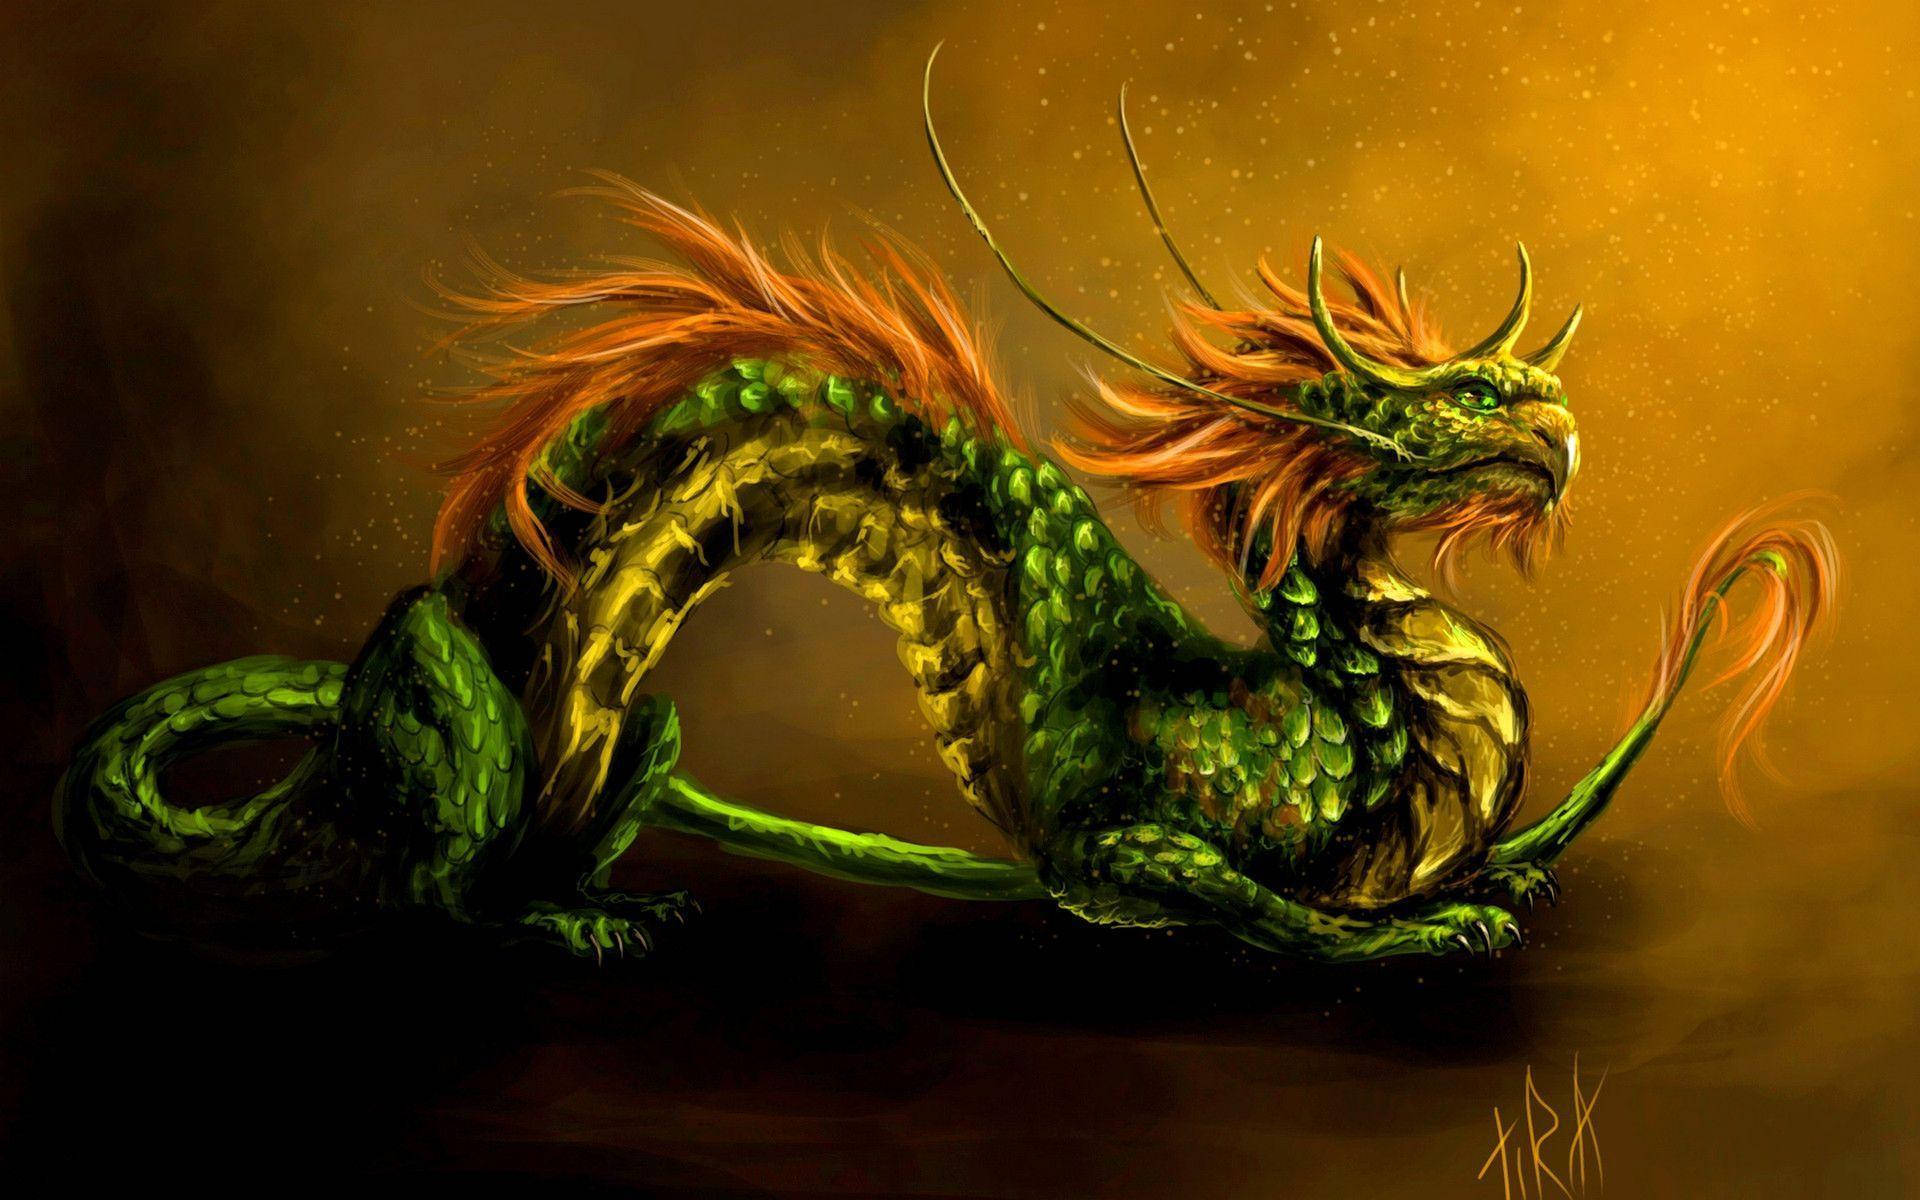 Cute Green Earth Dragon With Hair